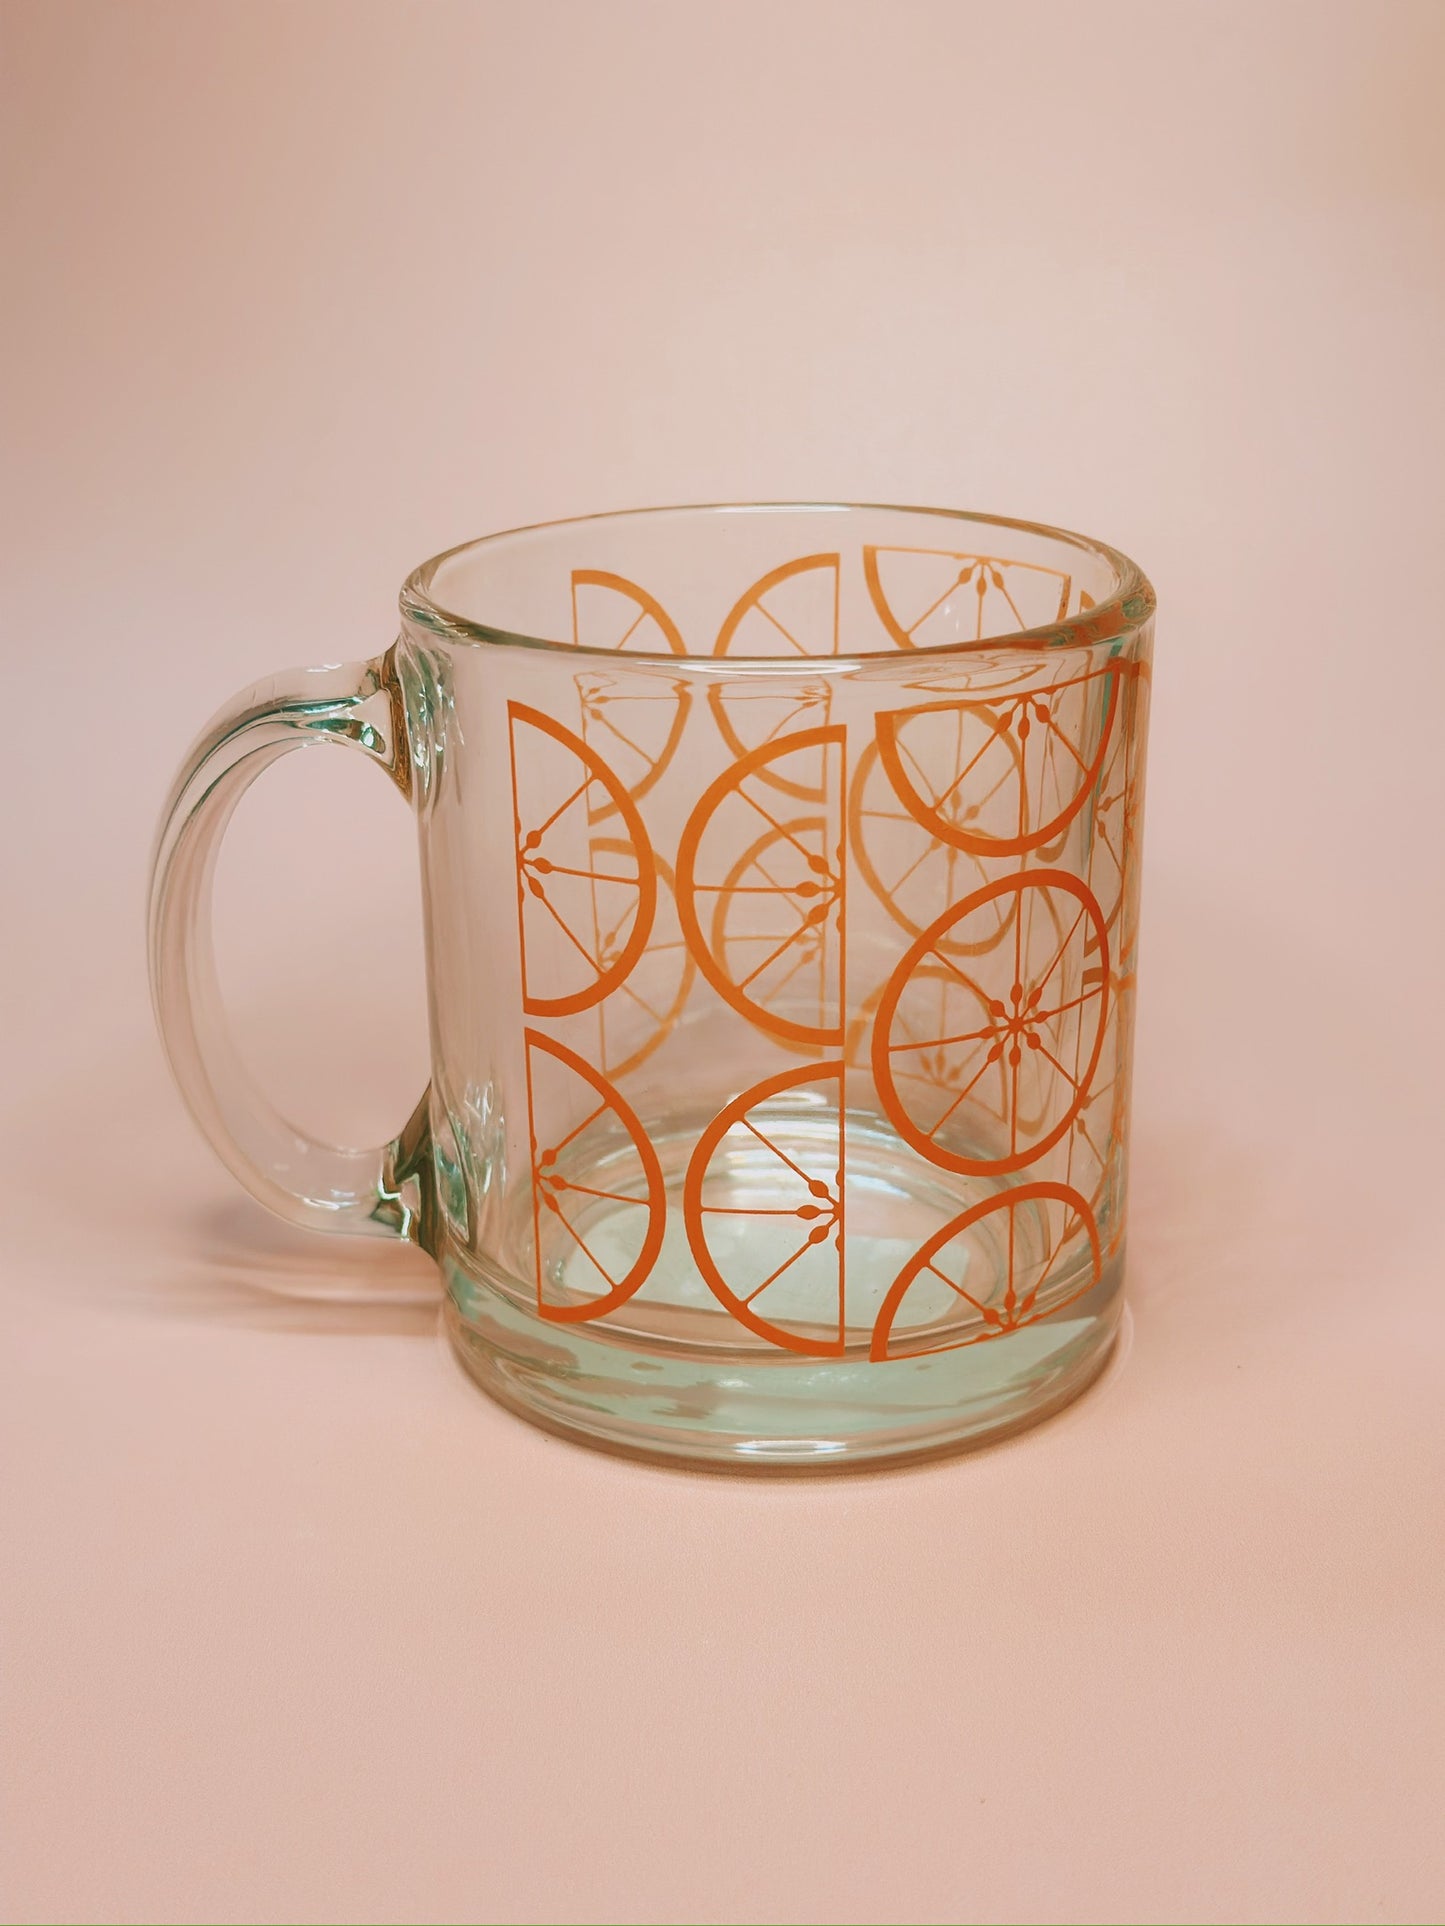 Glass Mug - Mod Grapefruit Pattern